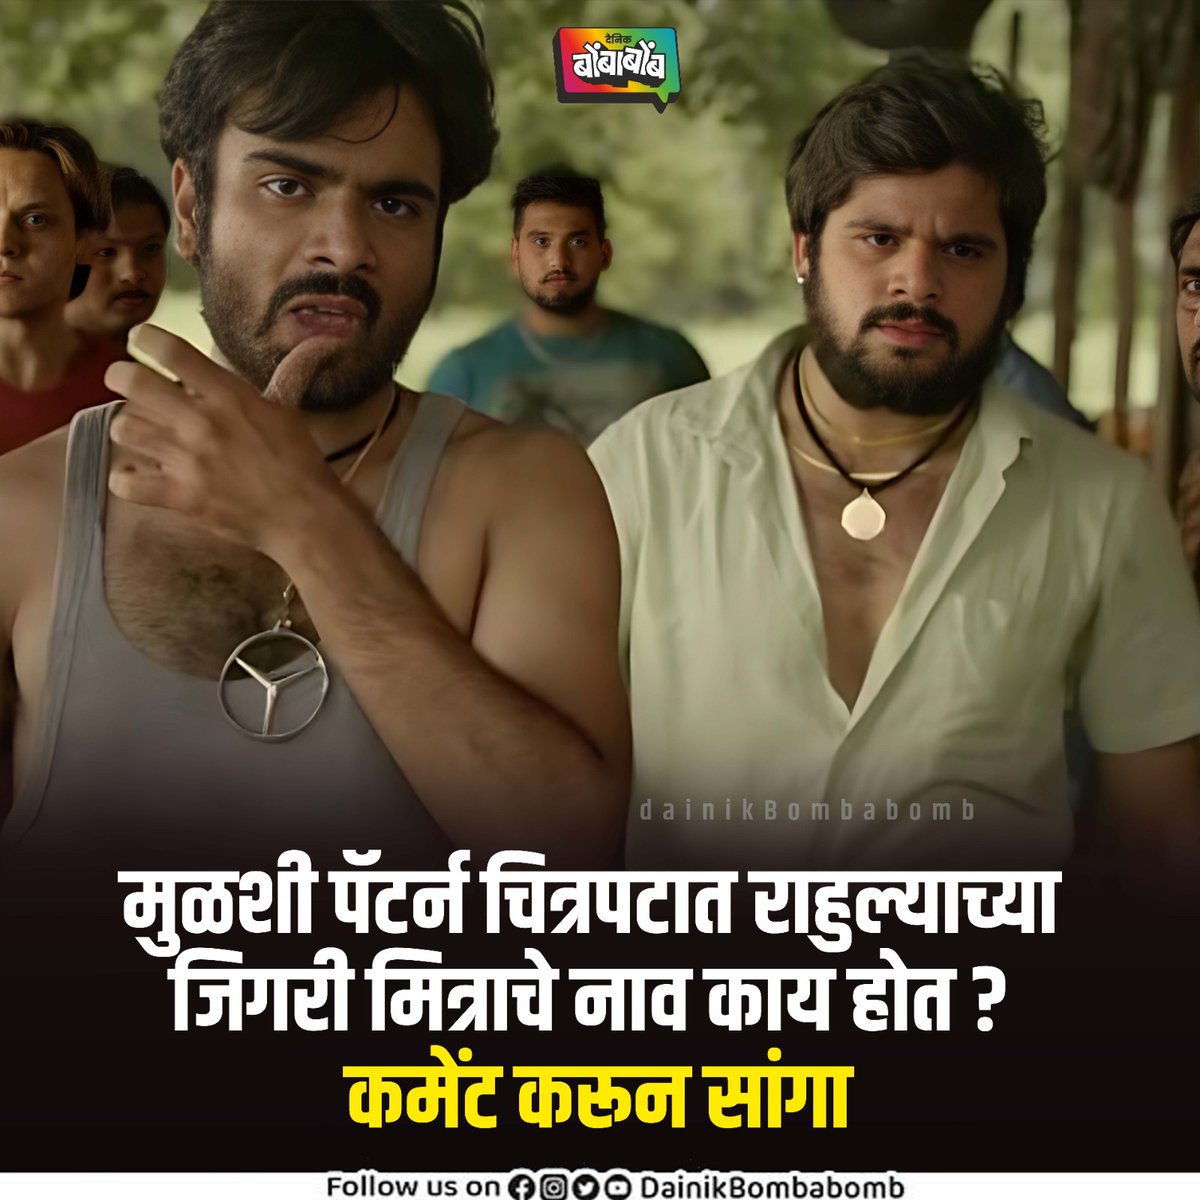 मुळशी पॅटर्न पाहिला असेल तर ह्या प्रश्नाचं उत्तर चुकवणार नाही!

#MulshiPattern #MarathiMovie